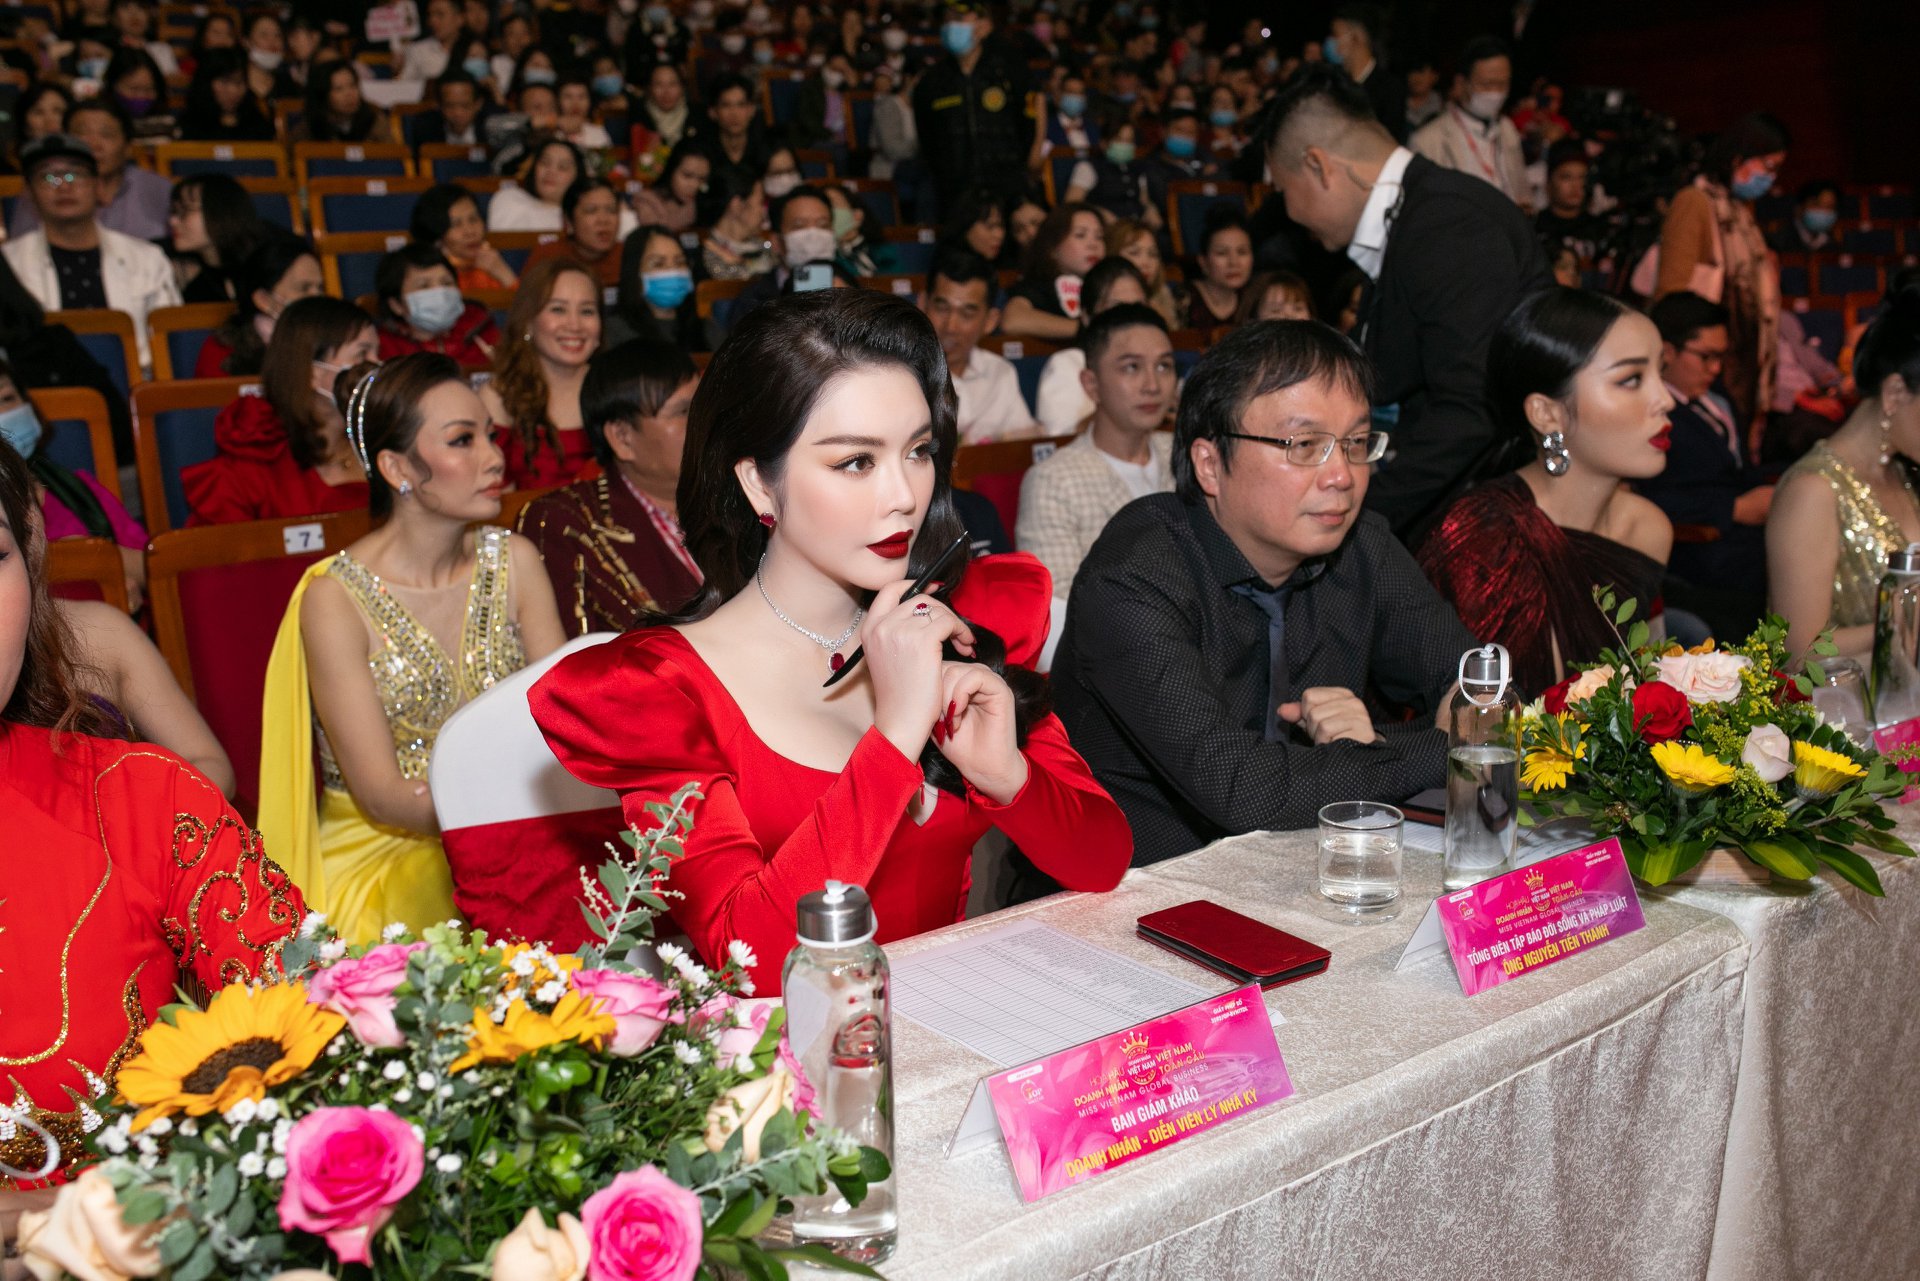 Lý Nhã Kỳ trở thành BGK cho cuộc thi Hoa hậu Doanh nhân Việt Nam Toàn cầu 2020. Cô cực kỳ chăm chú theo dõi các phần thi của các thí sinh để có thể cho điểm một cách công tâm.